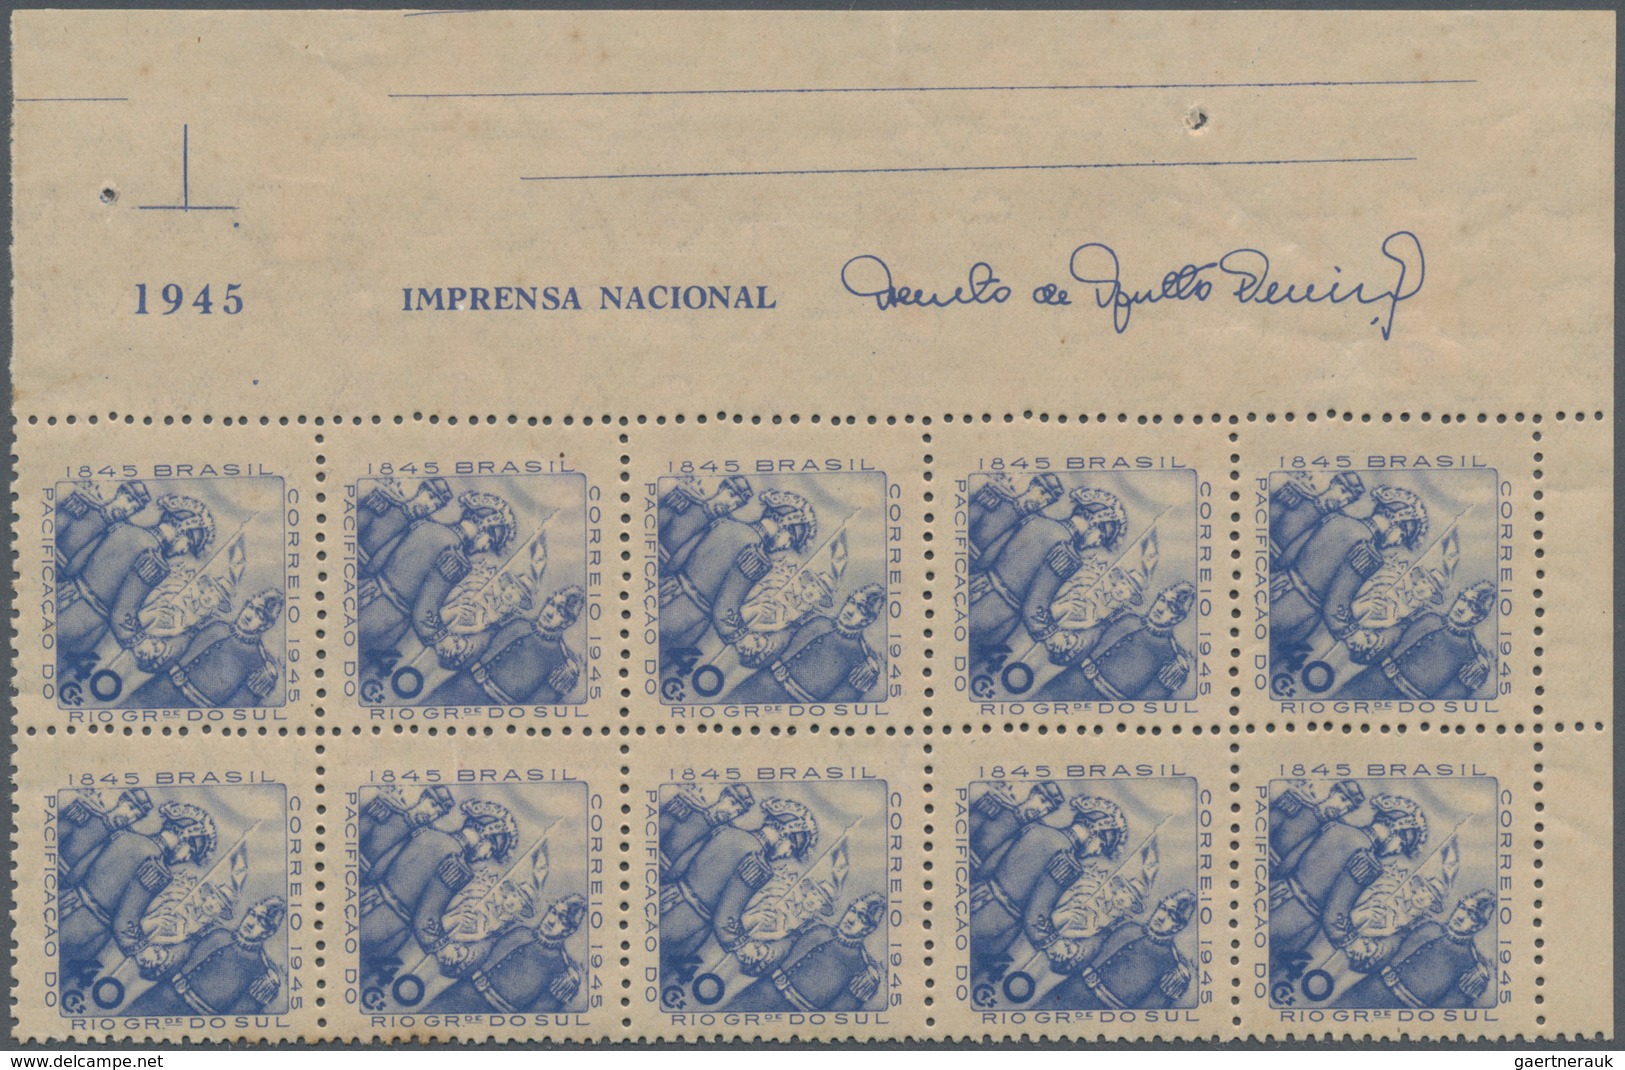 Brasilien: 1919/1958, MARGIN IMPRINTS, splendid mint collection of 225 units up to blocks of 70, sho